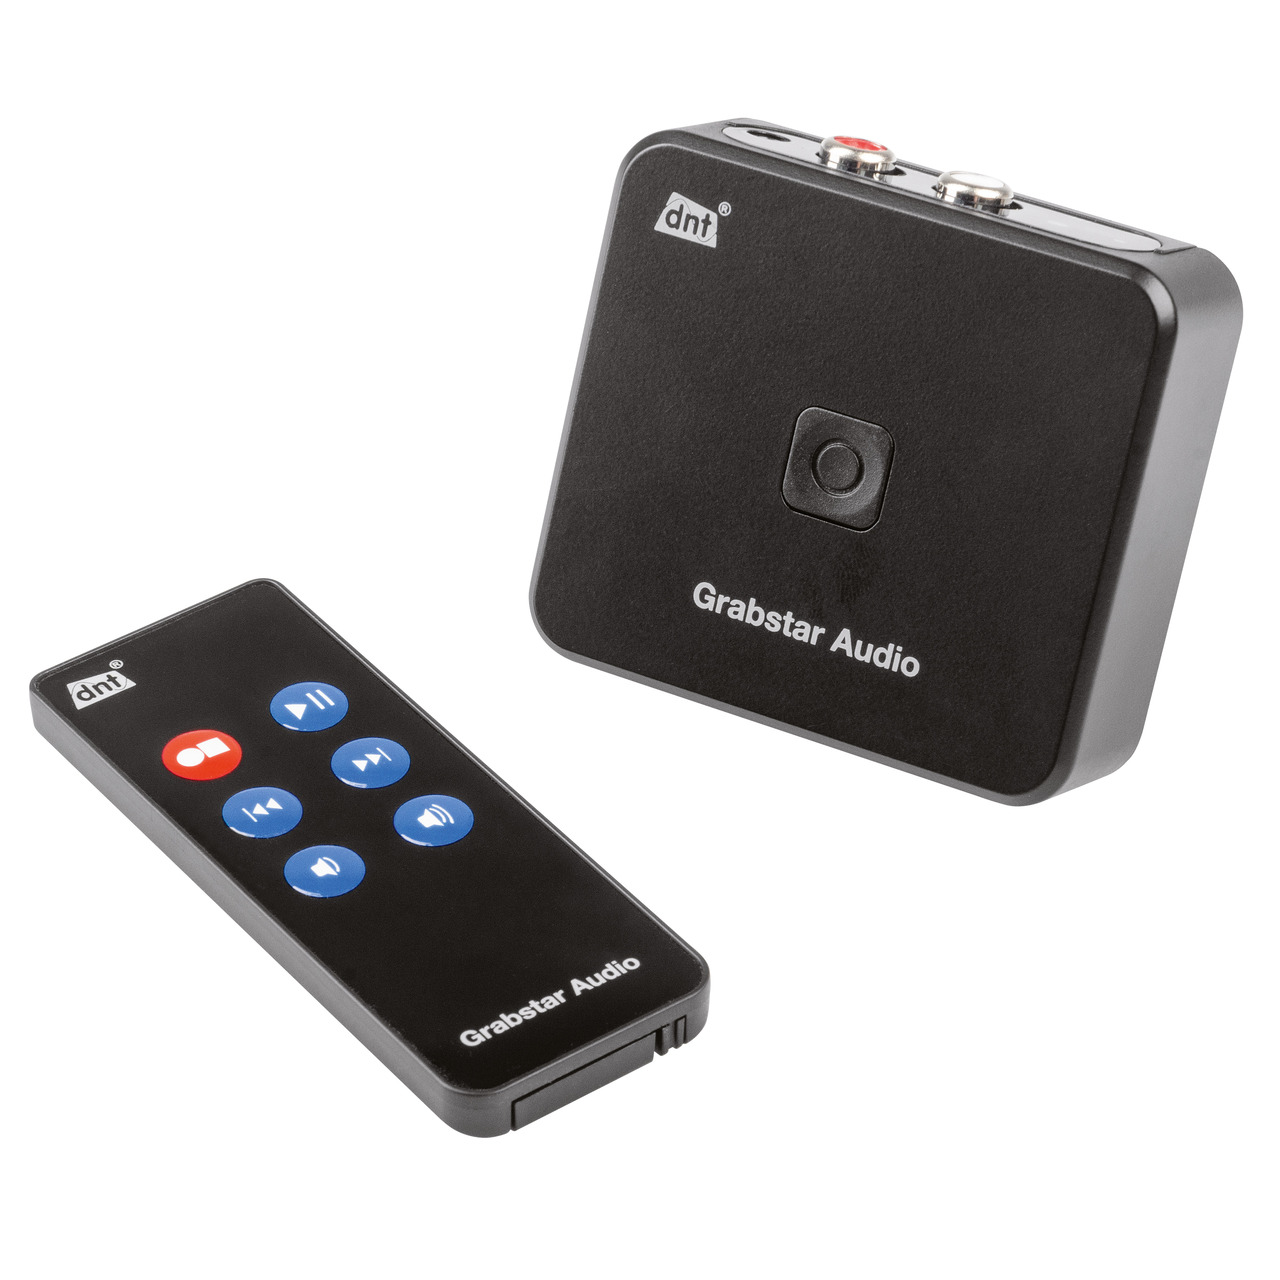 dnt Stand-alone Audio-Digitalisierer Grabstar Audio- für Kassetten und Tonbänder- speichert auf SD-USB unter Multimedia